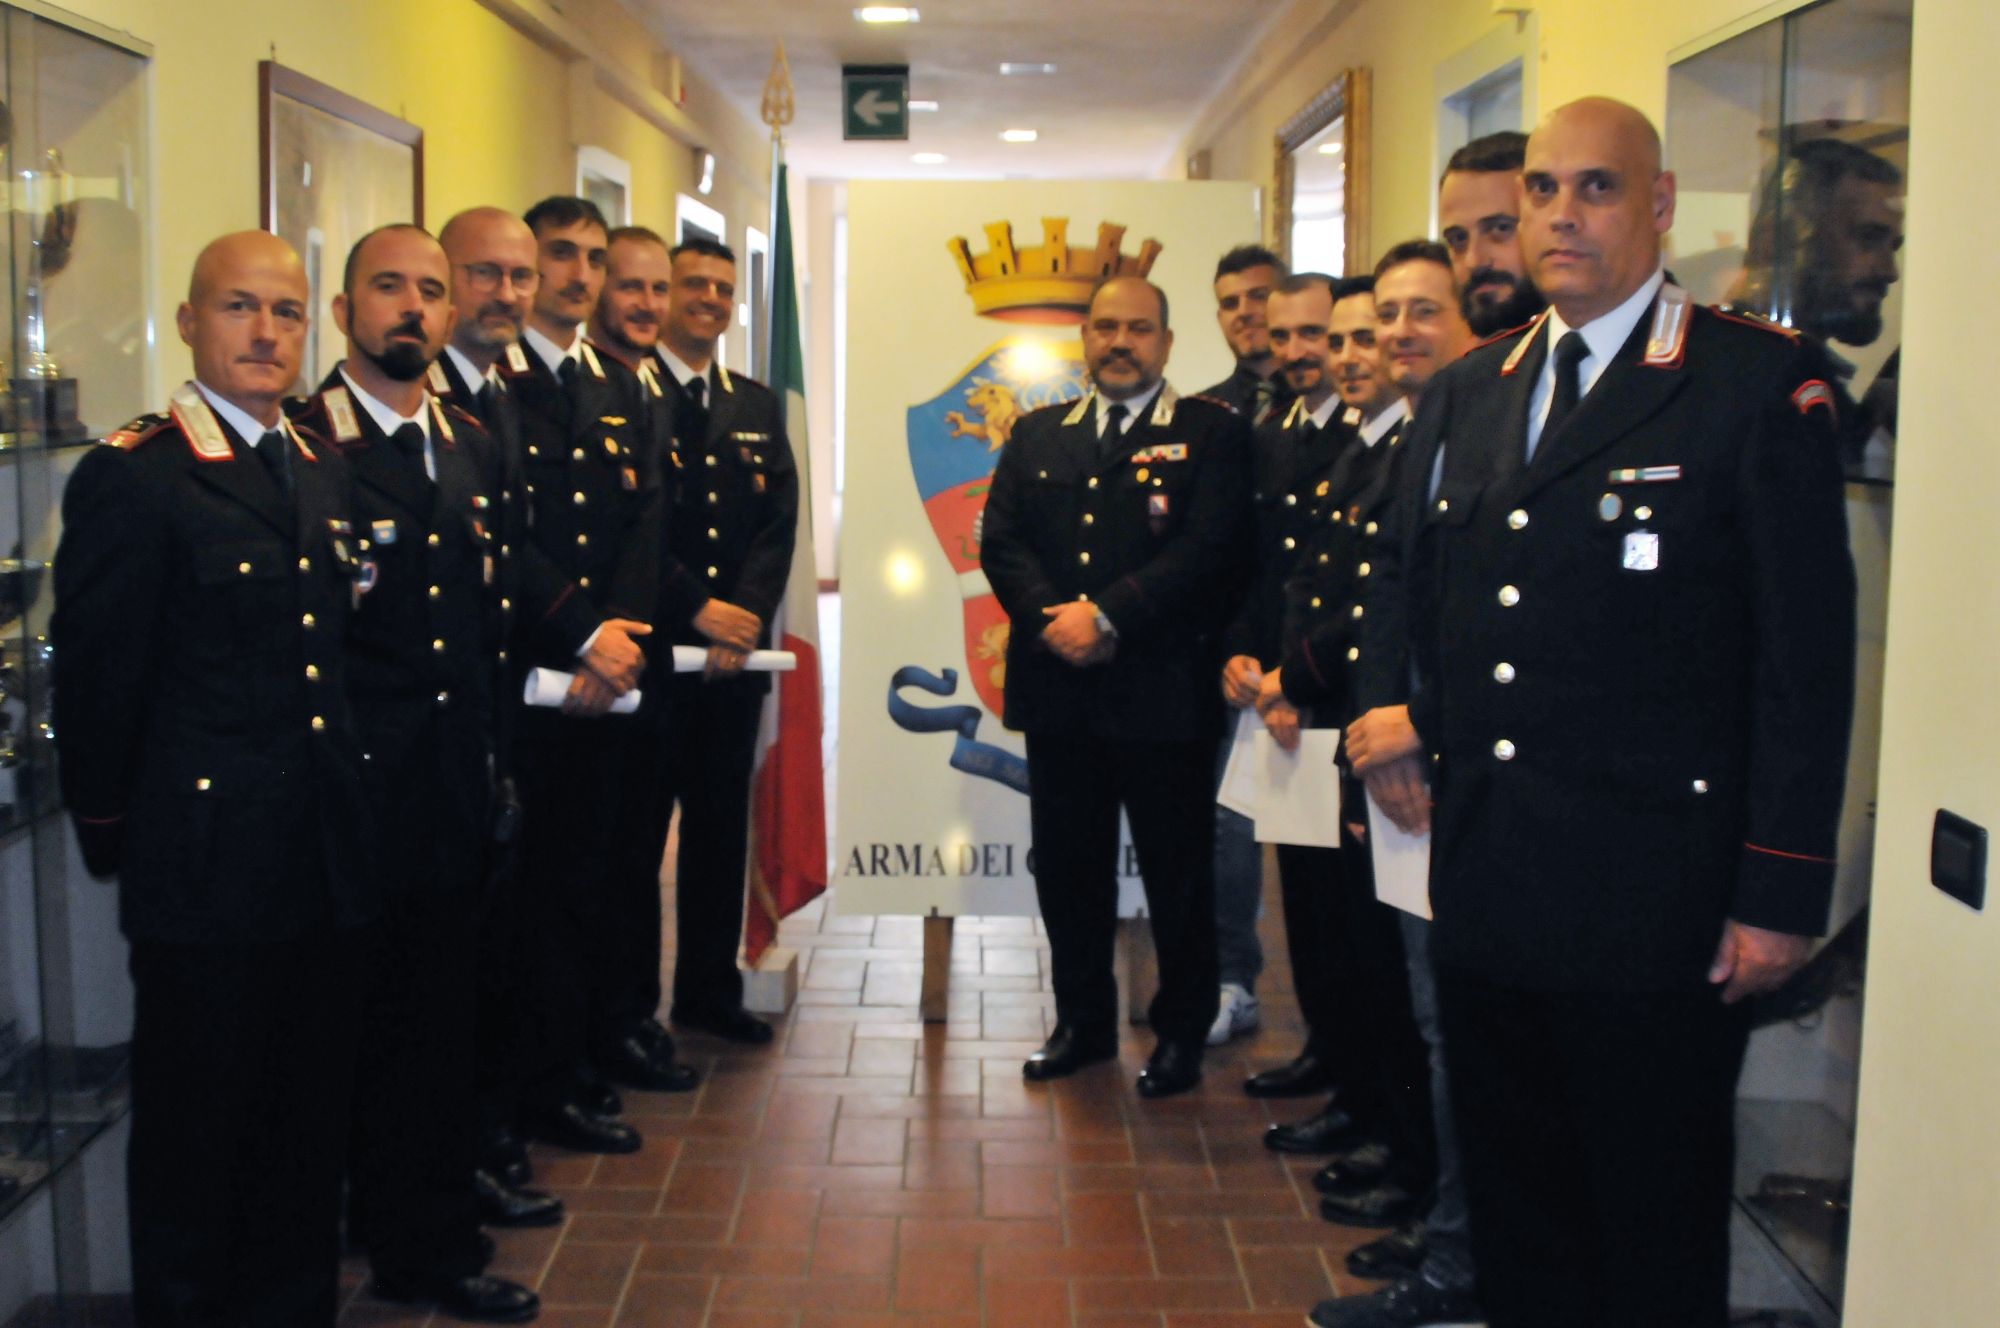 Festa al comando provinciale dei Carabinieri: “Croce d’oro e d’argento” per anzianità di servizio